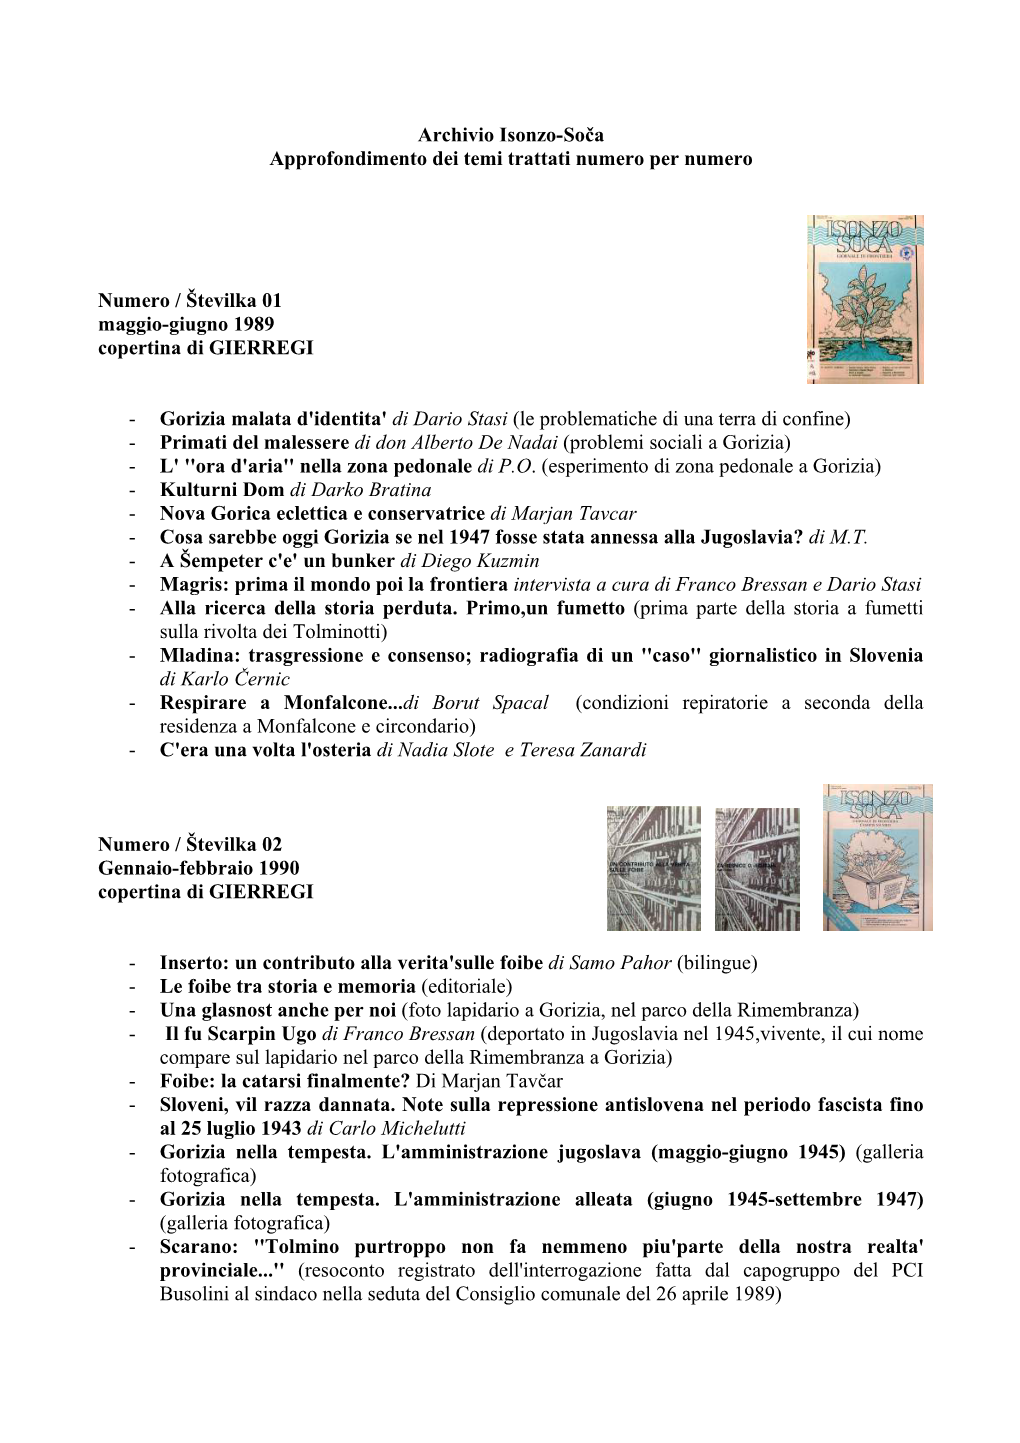 Archivio Isonzo-Soča Approfondimento Dei Temi Trattati Numero Per Numero